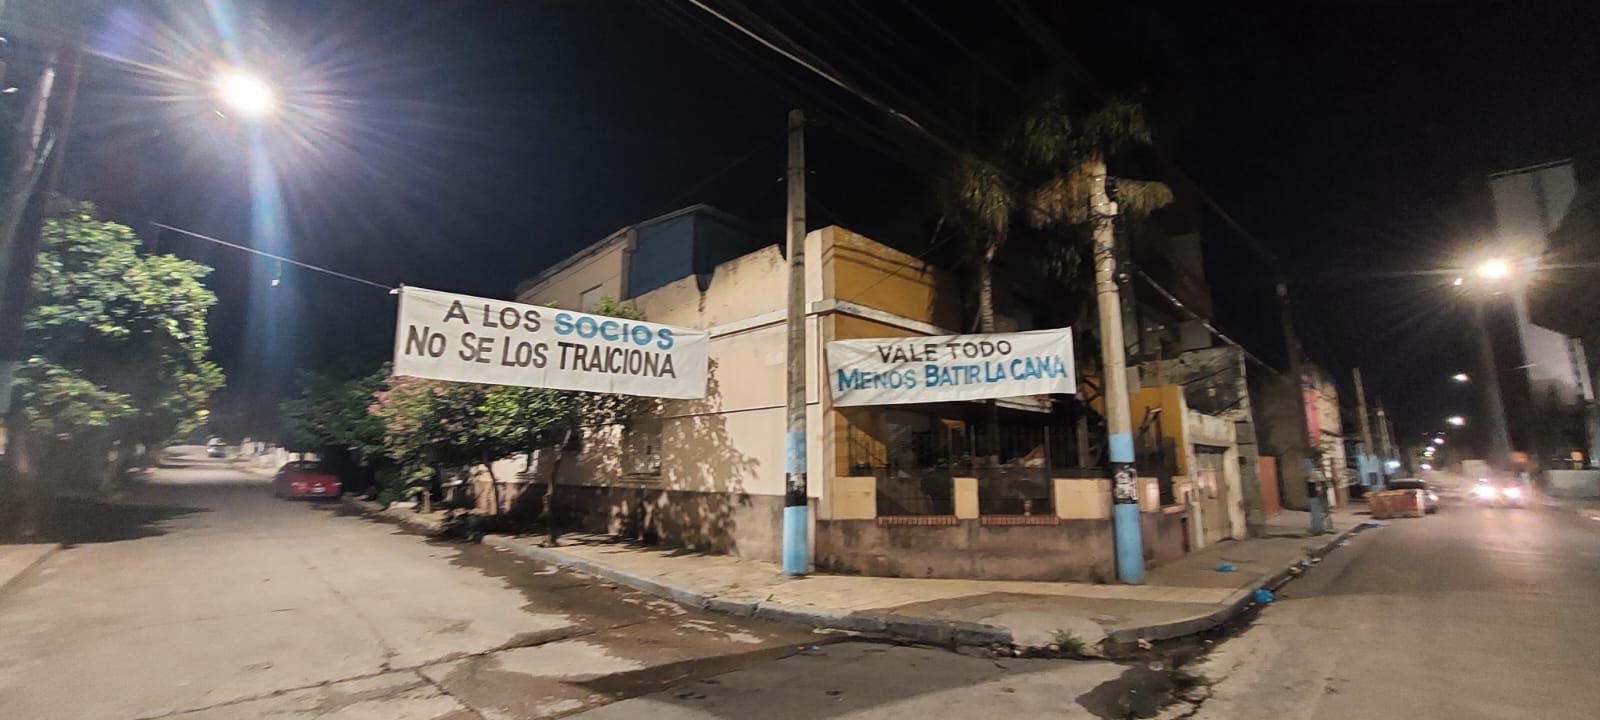 Belgrano: Banderas con mensajes intimidantes por el derecho de admisión a socios | Canal Showsport